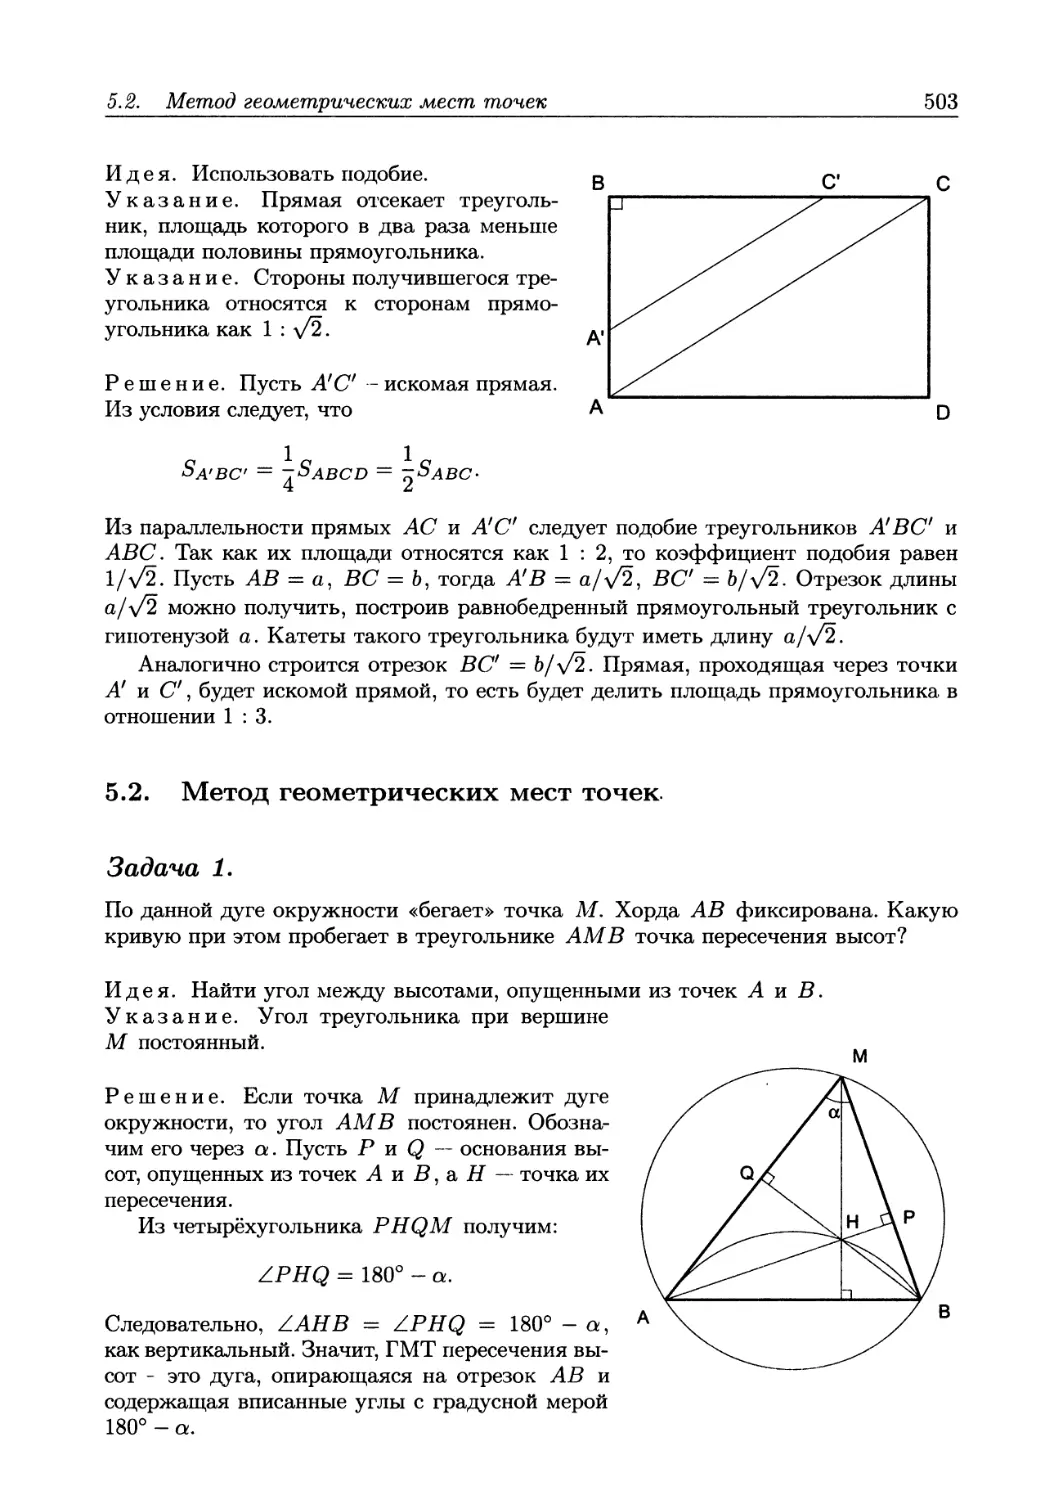 5.2. Метод геометрических мест точек